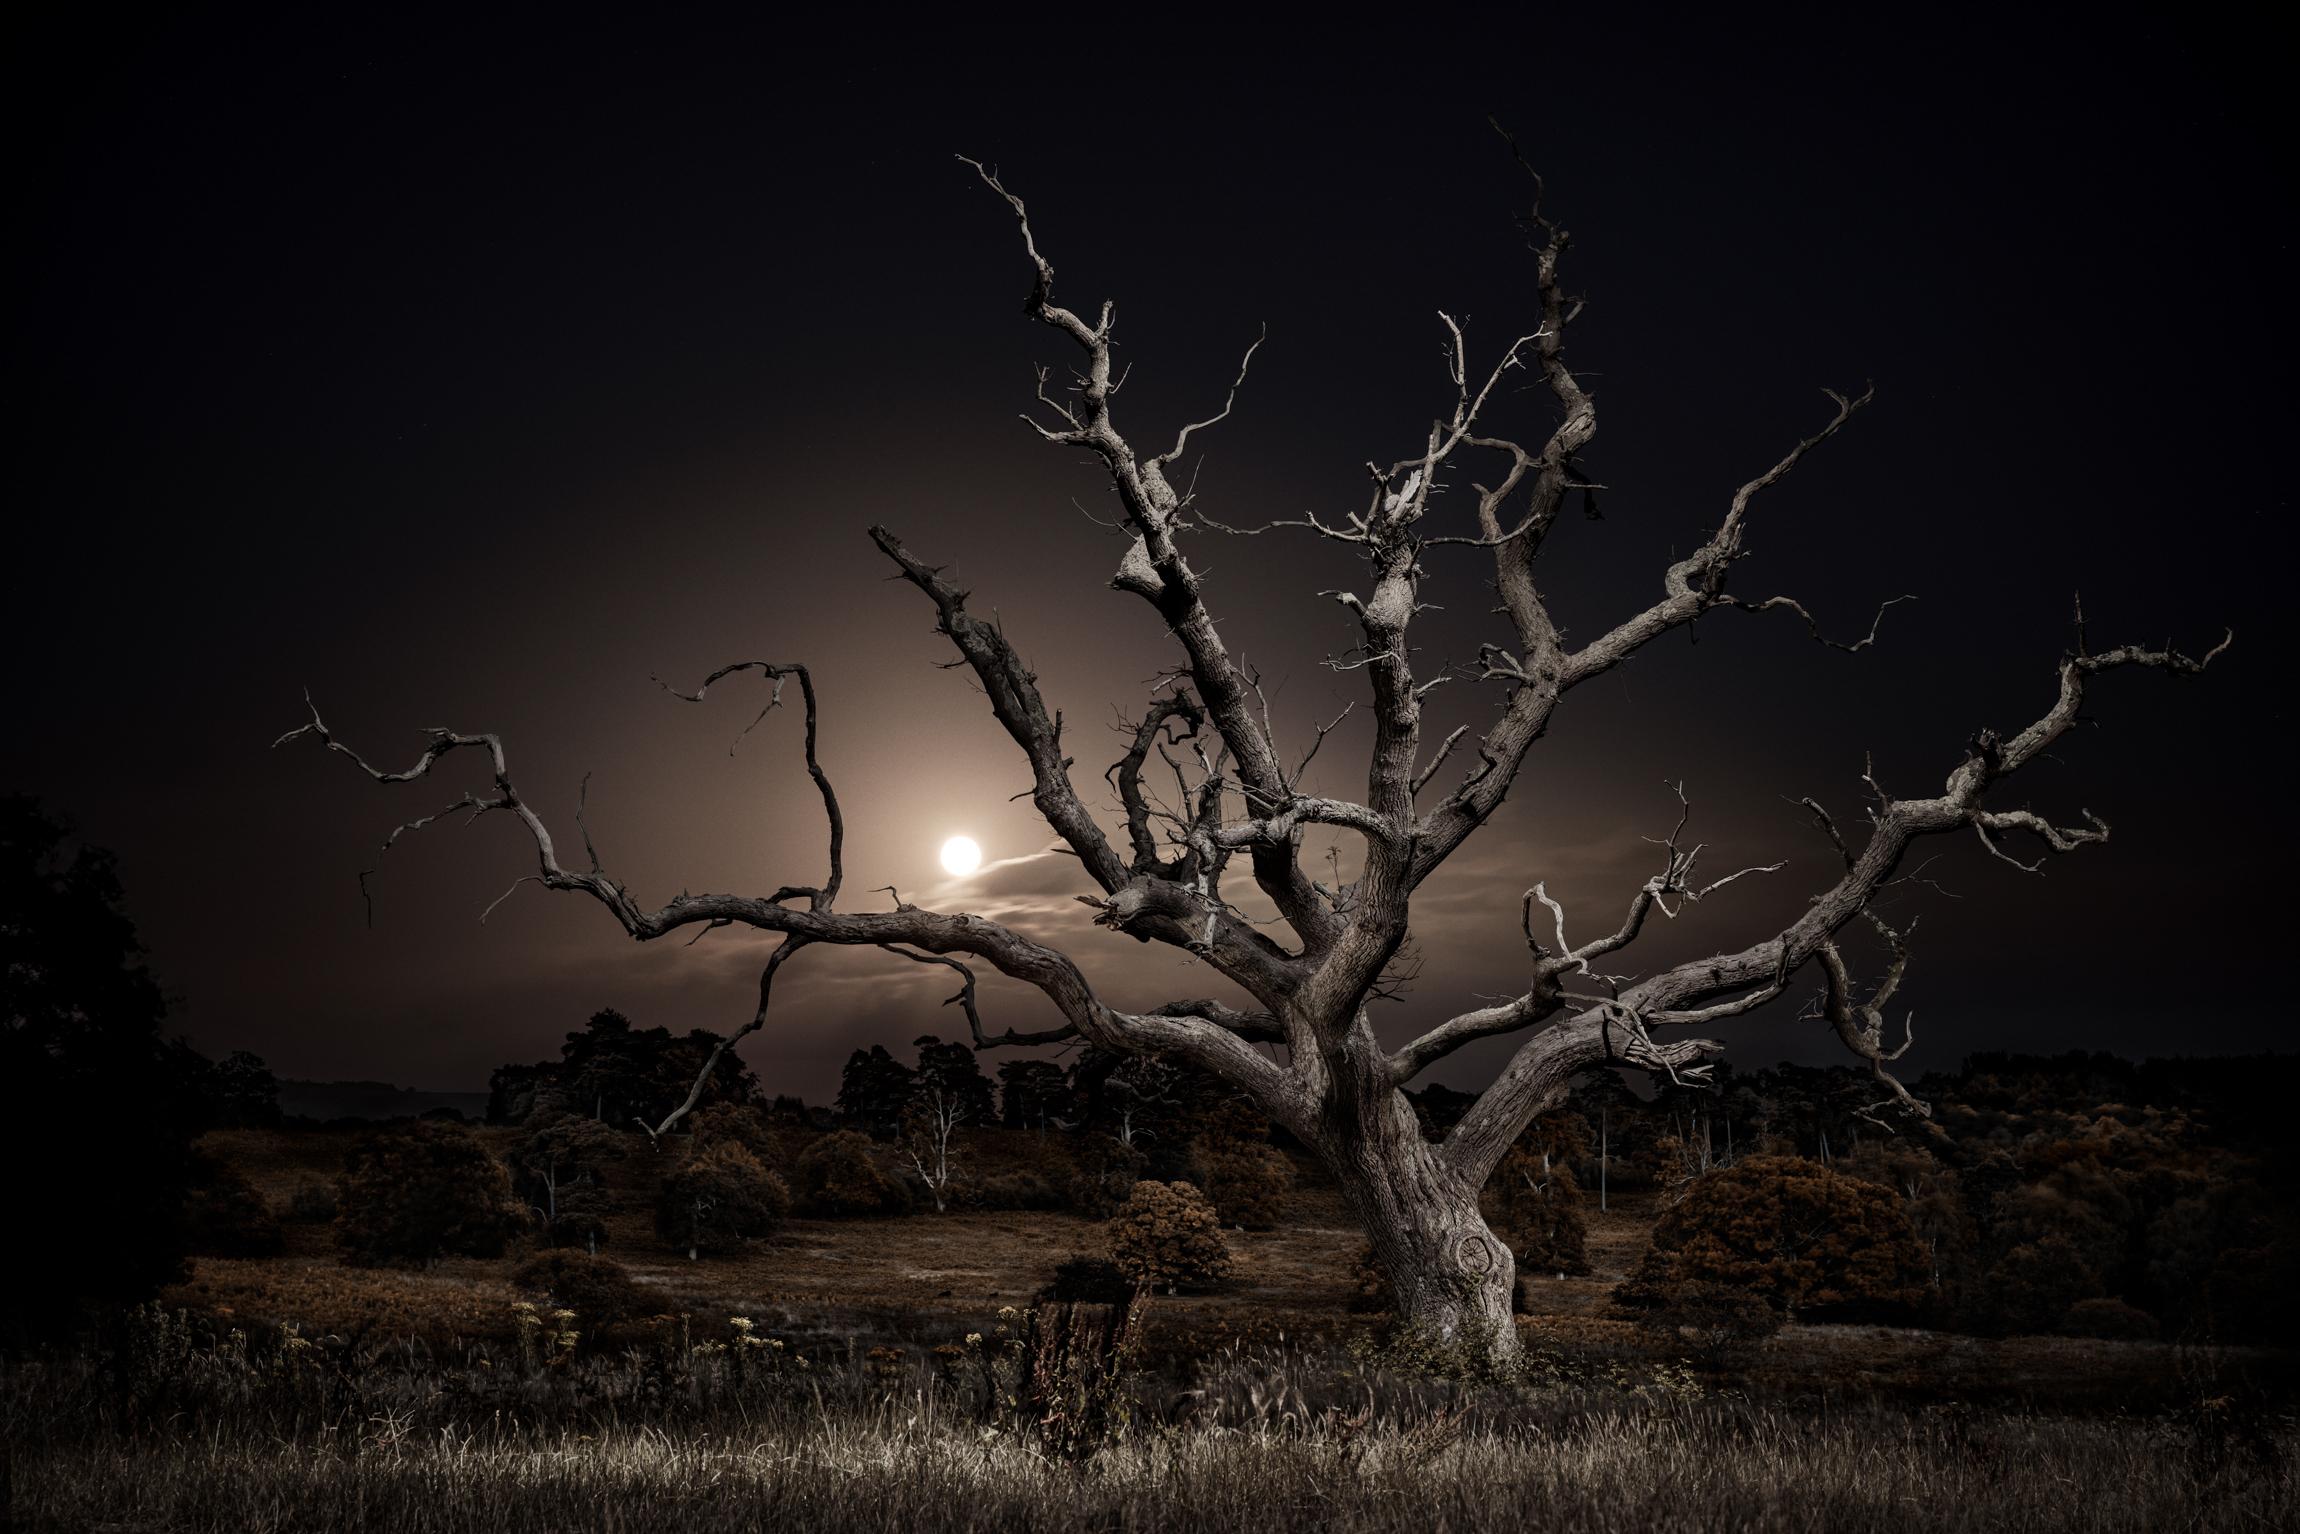 Landscape Photograph Jasper Goodall - Le chemin de la lune, 030, lever de la lune en pleine lune, chêne squelettique, paysage